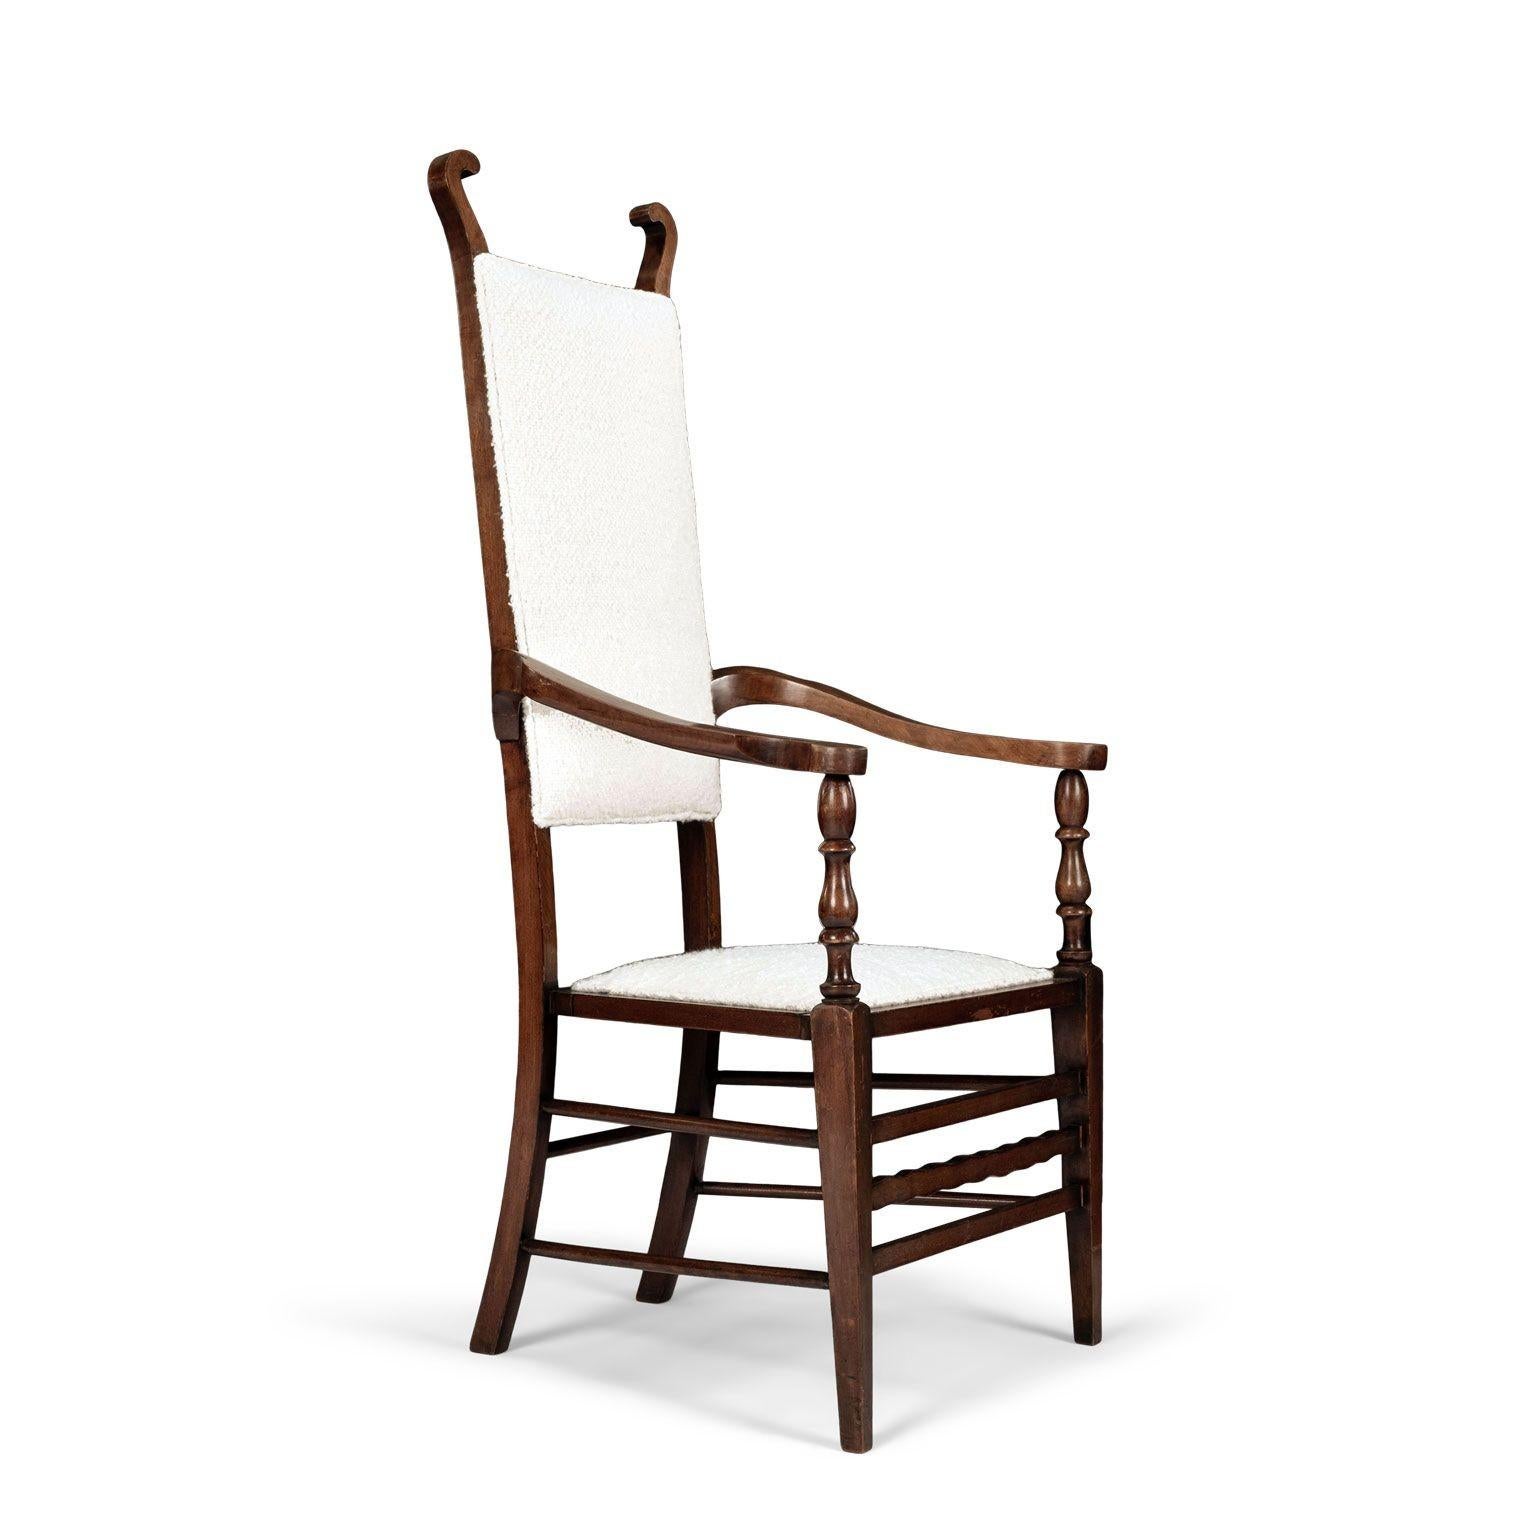 Englischer Armlehnstuhl aus braunem Nussbaumholz, zugeschrieben JS Henry, um 1900. Die verschnörkelten Endstücke auf der massiven Rückenlehne und der Sitzfläche sind neu mit cremefarbenem Boucle gepolstert. Flankiert von nach außen gebogenen Armen,